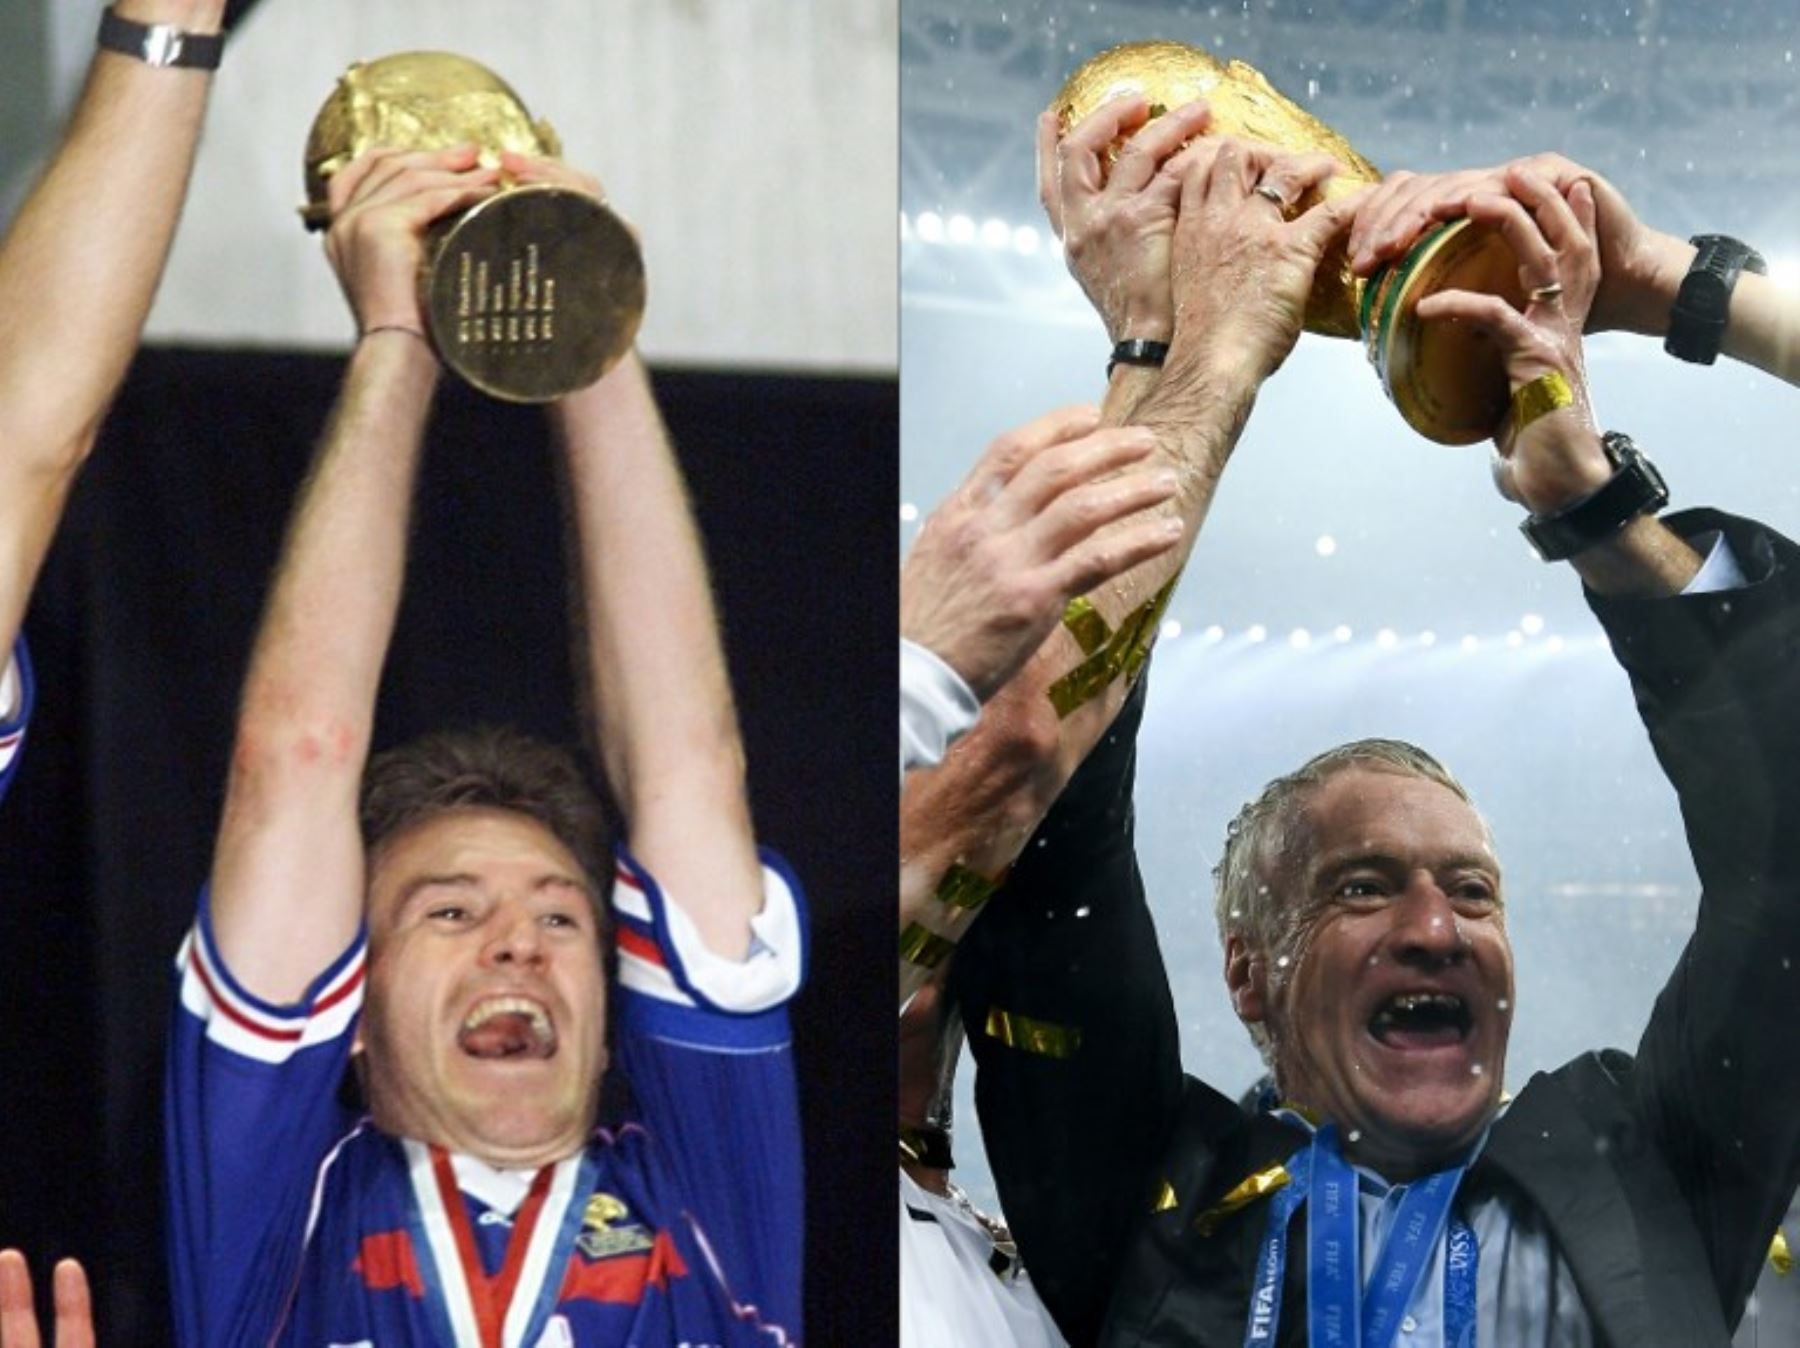 Deschamps fue campeón mundial con Francia en 1998 como jugador y vuelve alzar el trofeo como técnico de los Bleus